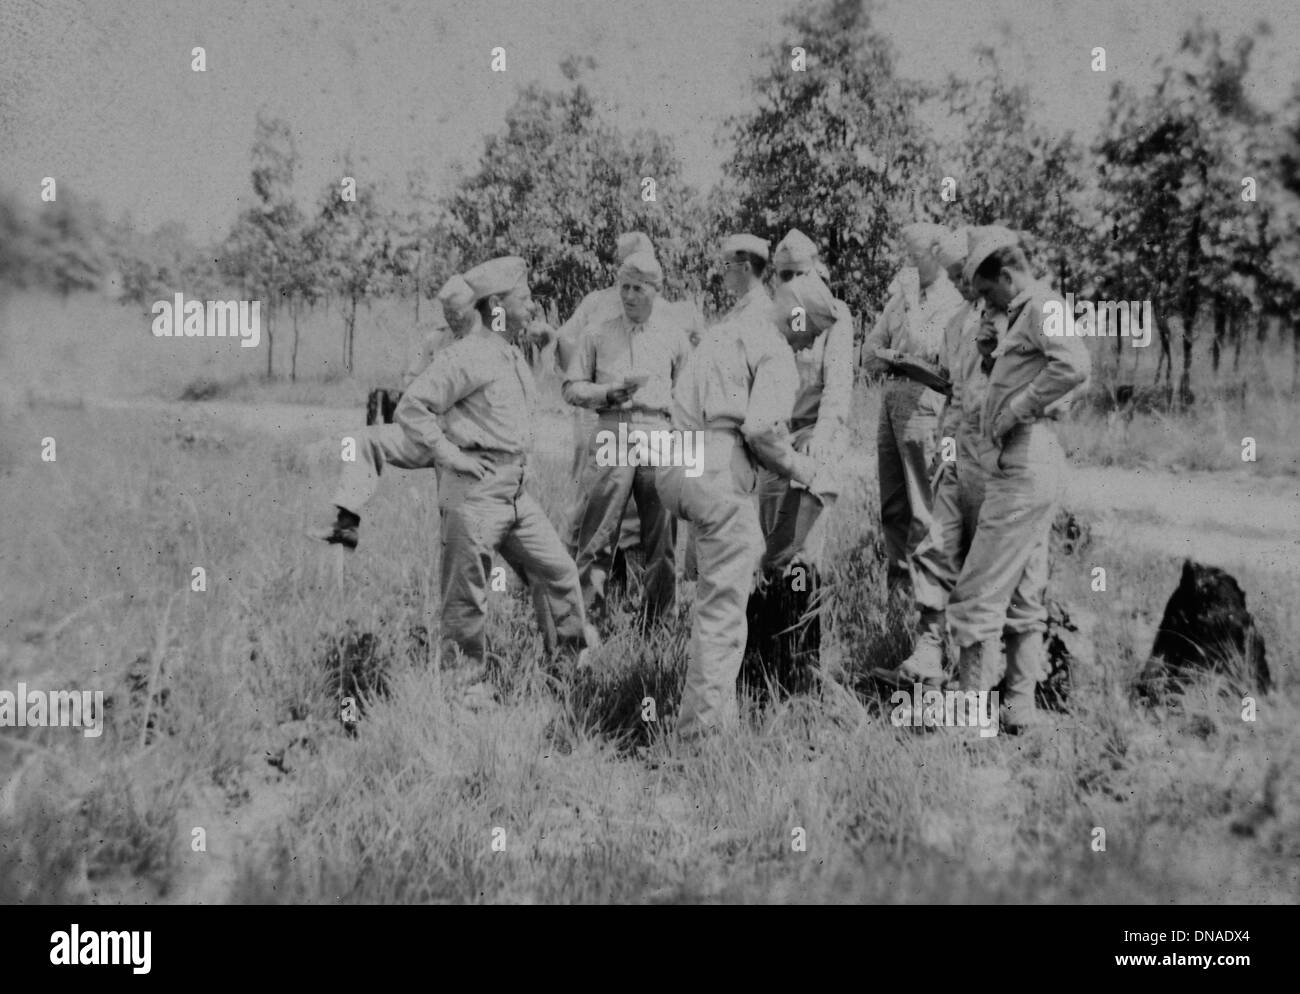 Gruppo di militari in uniforme nel campo, ritratto, durante la seconda guerra mondiale, US Army Base Militare, Indiana, USA, 1942 Foto Stock